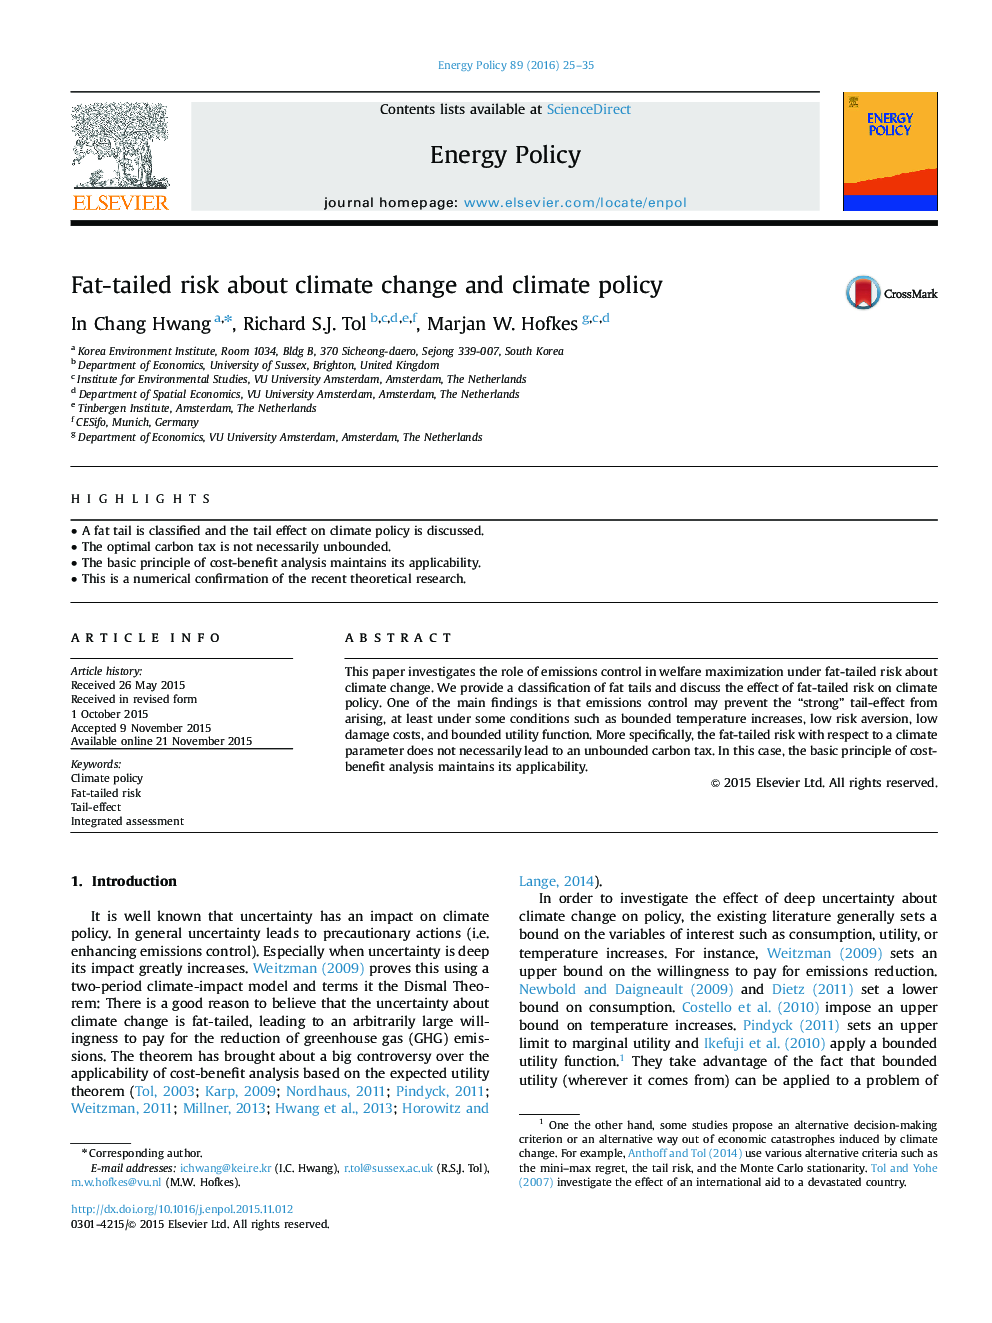 خطر چاقی در مورد تغییرات اقلیمی و سیاست آب و هوا 